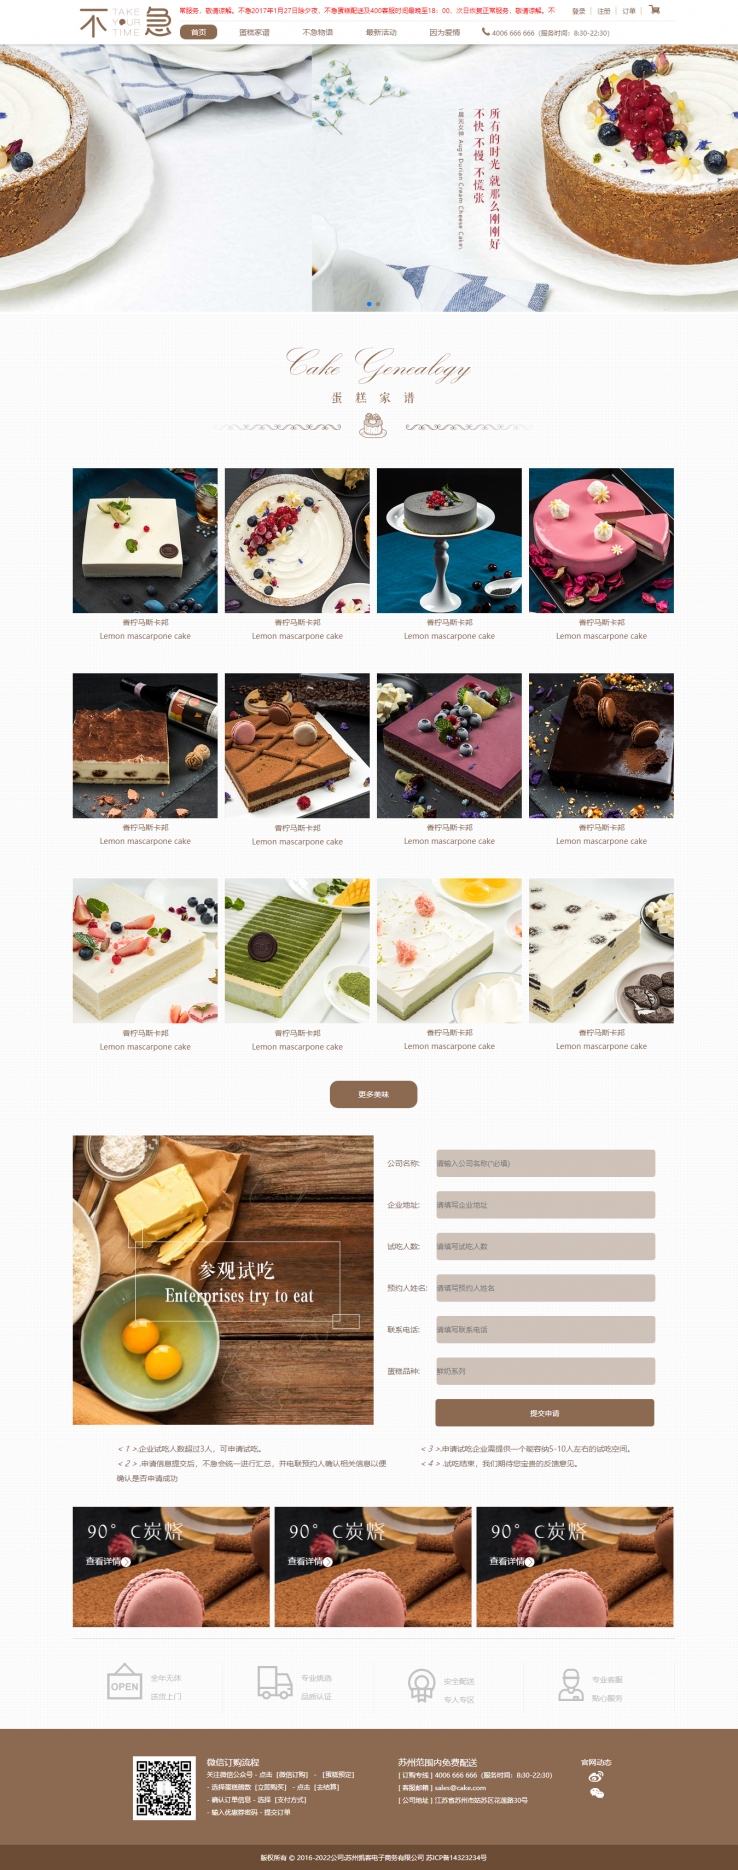 棕色简洁风格的蛋糕甜品店企业网站源码下载